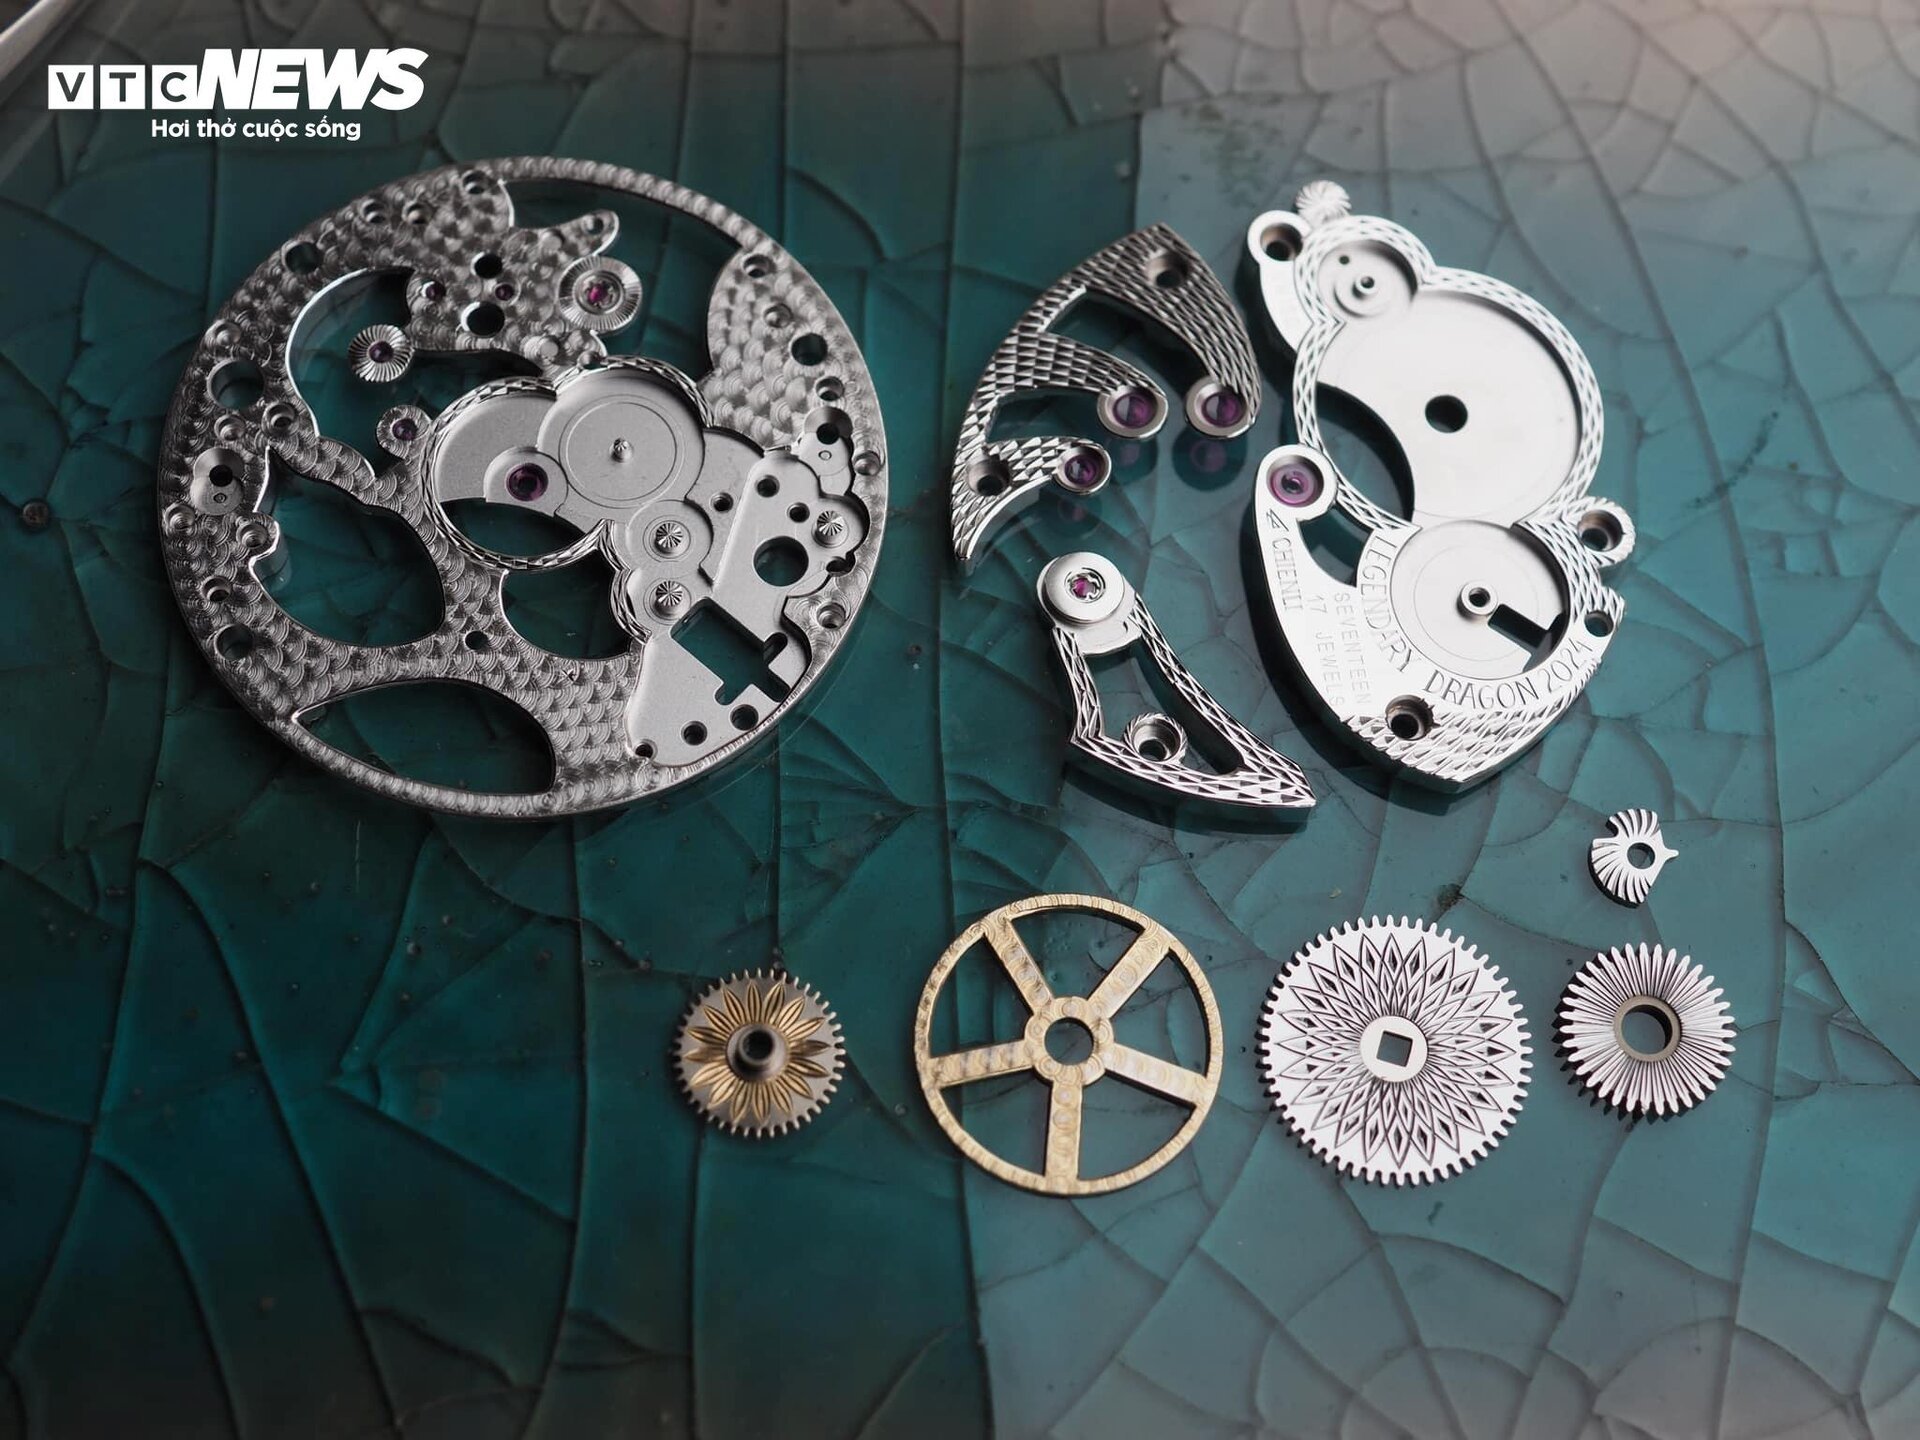 Chiếc đồng hồ bằng titan được thợ thủ công Việt định giá 300 triệu đồng - 5